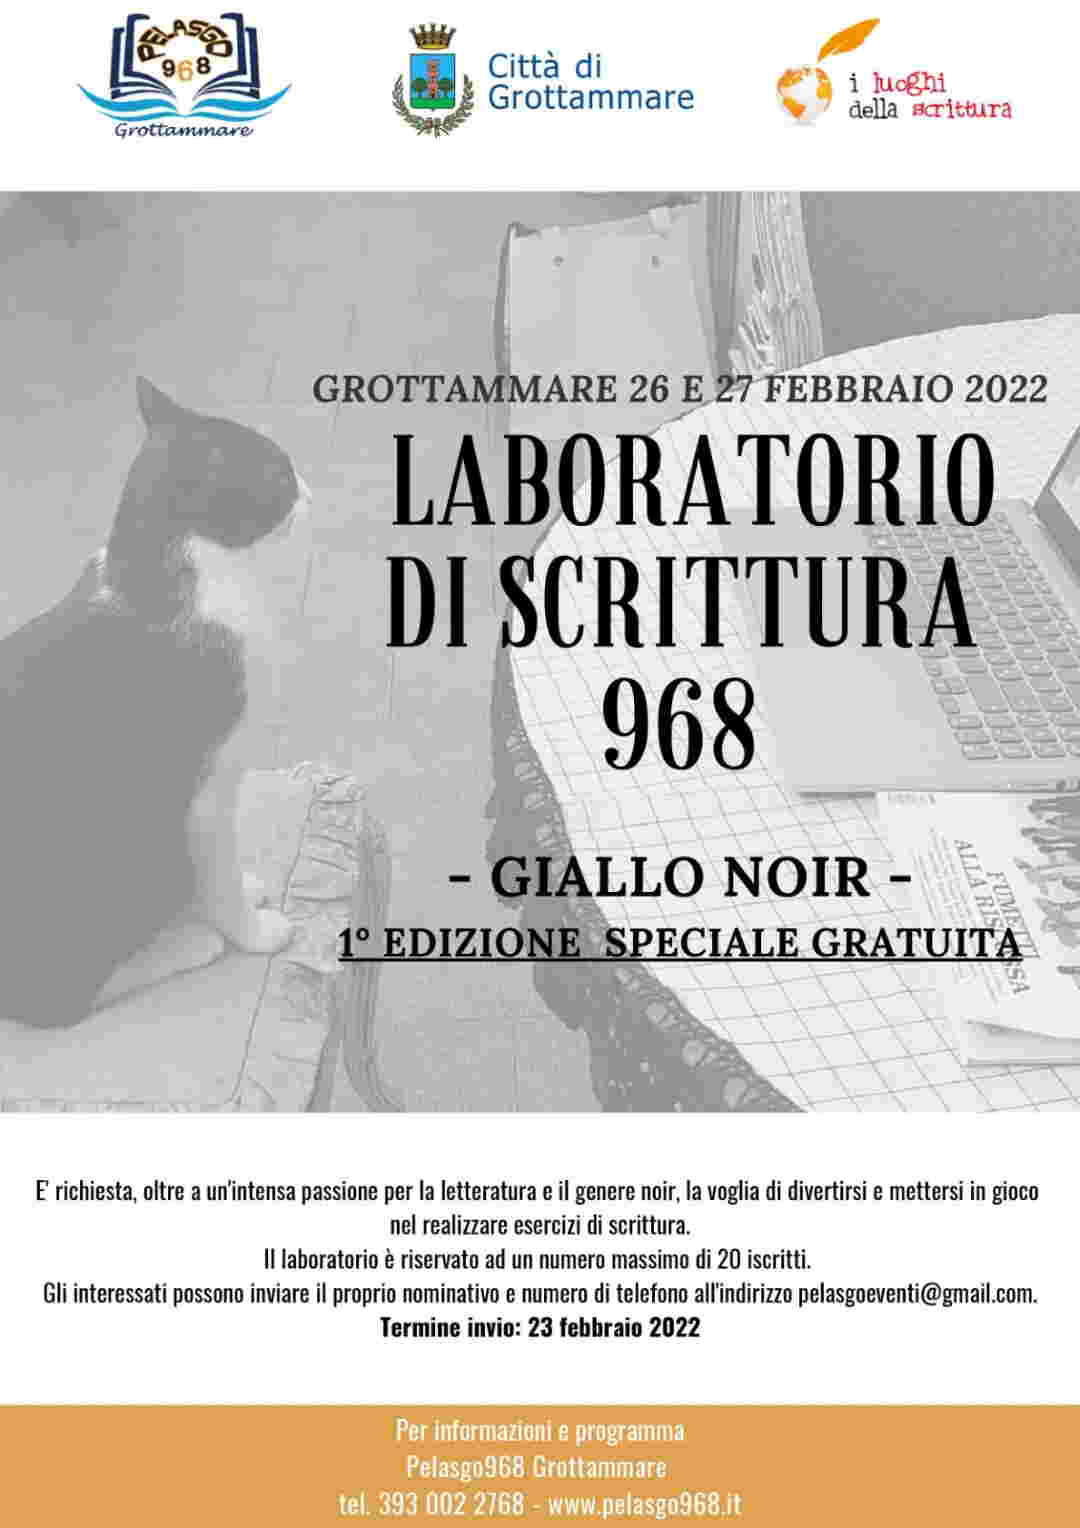 Giallo Noir, Laboratorio di Scrittura 968